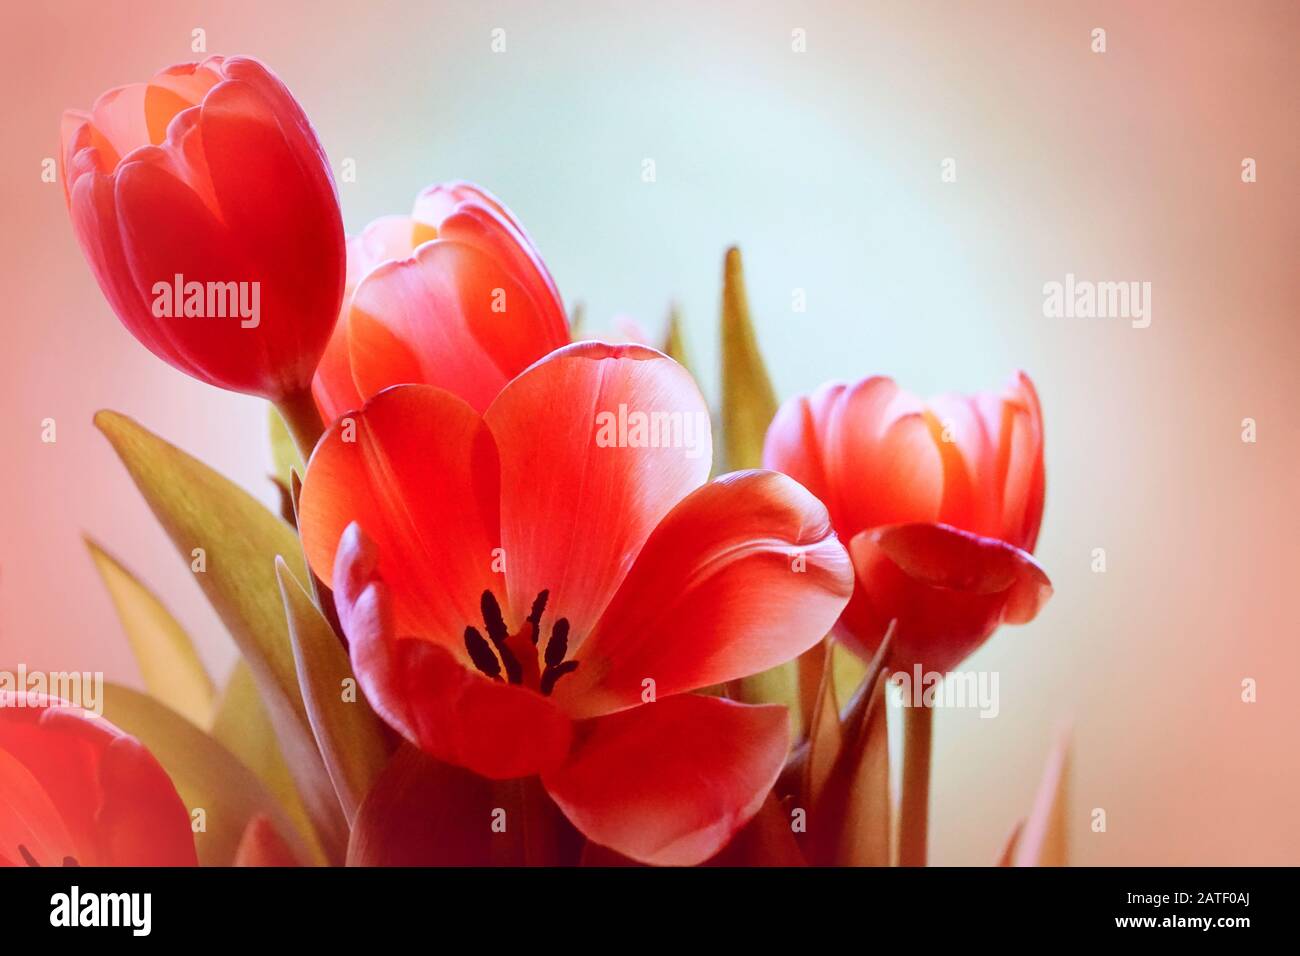 Fantastici tulipani arancioni morbidi su uno sfondo morbido arancione e bianco Foto Stock